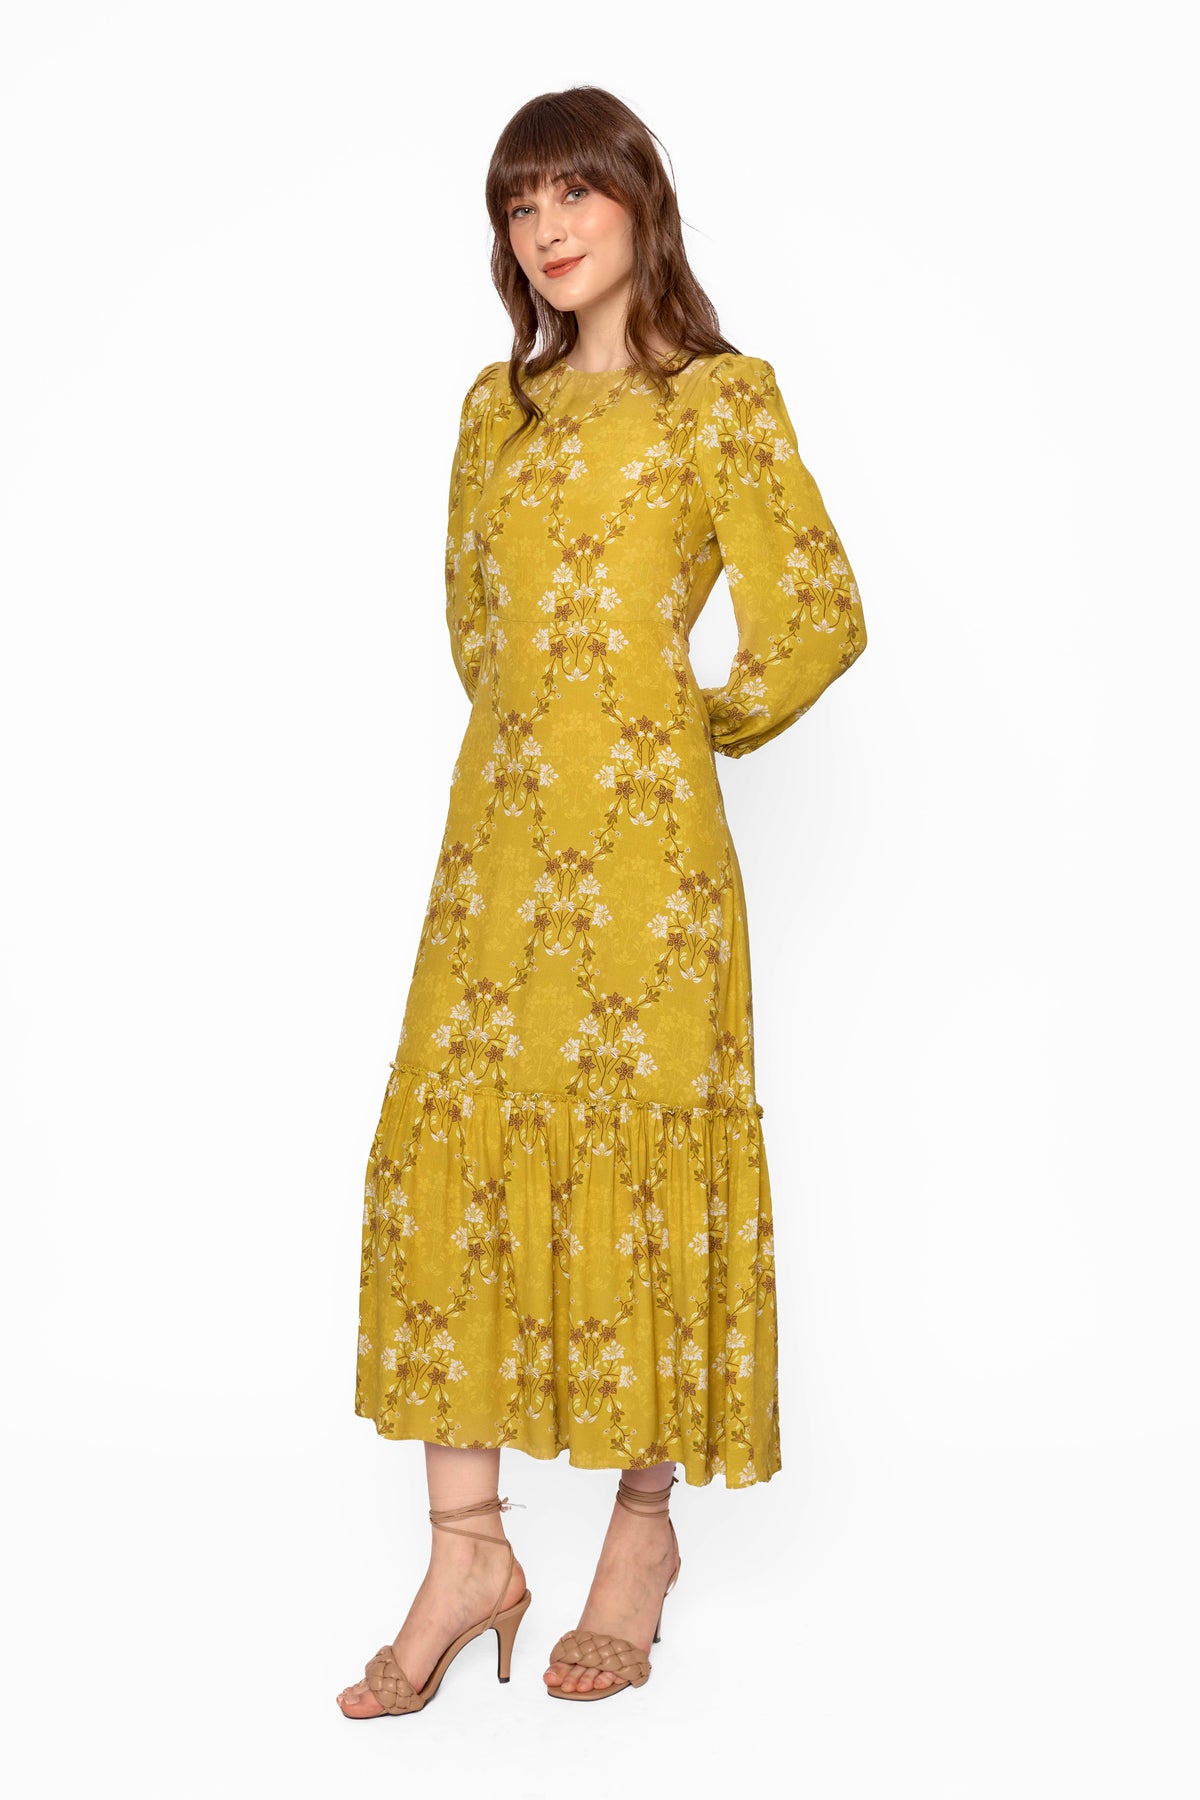 NUALA Dress in Yellow Bunga